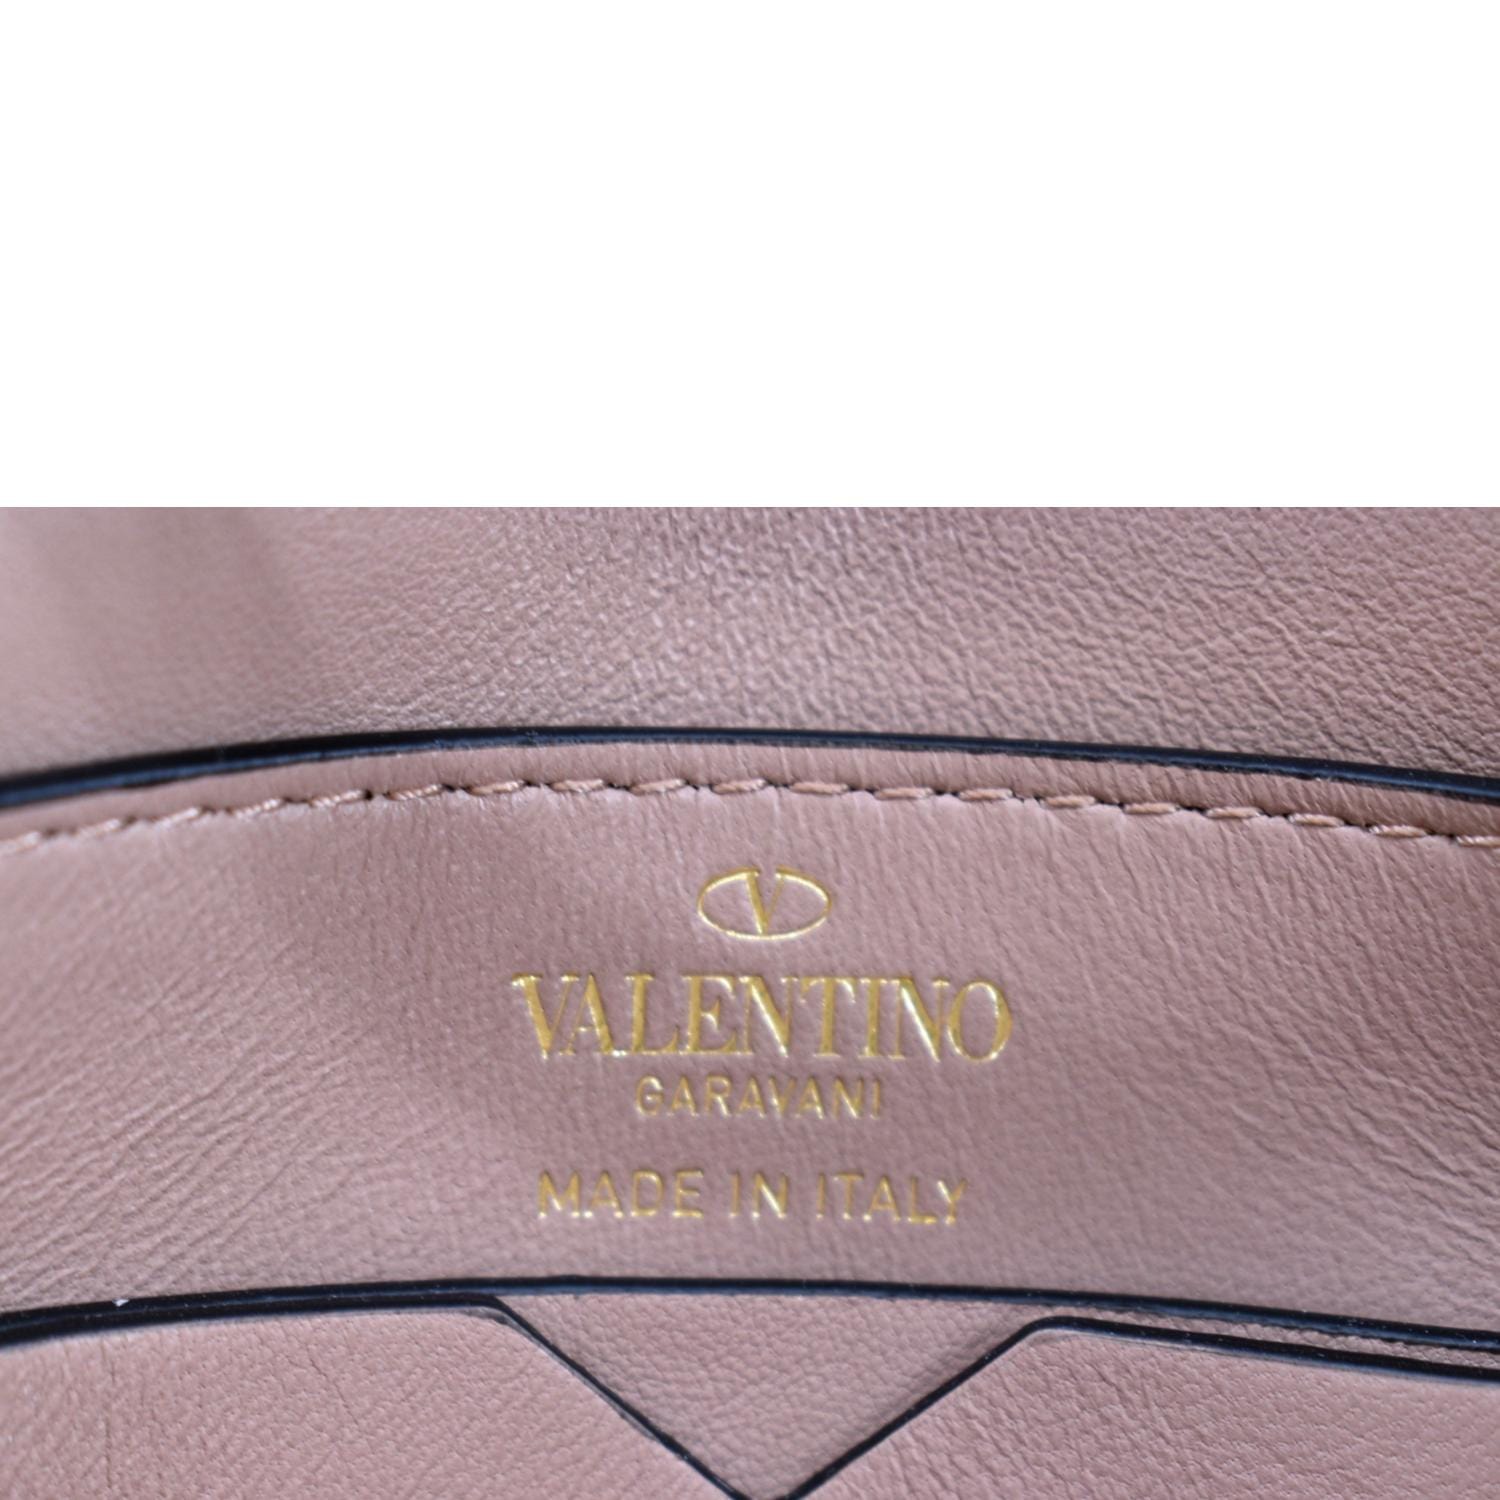 One Stud Leather Shoulder Bag in Pink - Valentino Garavani